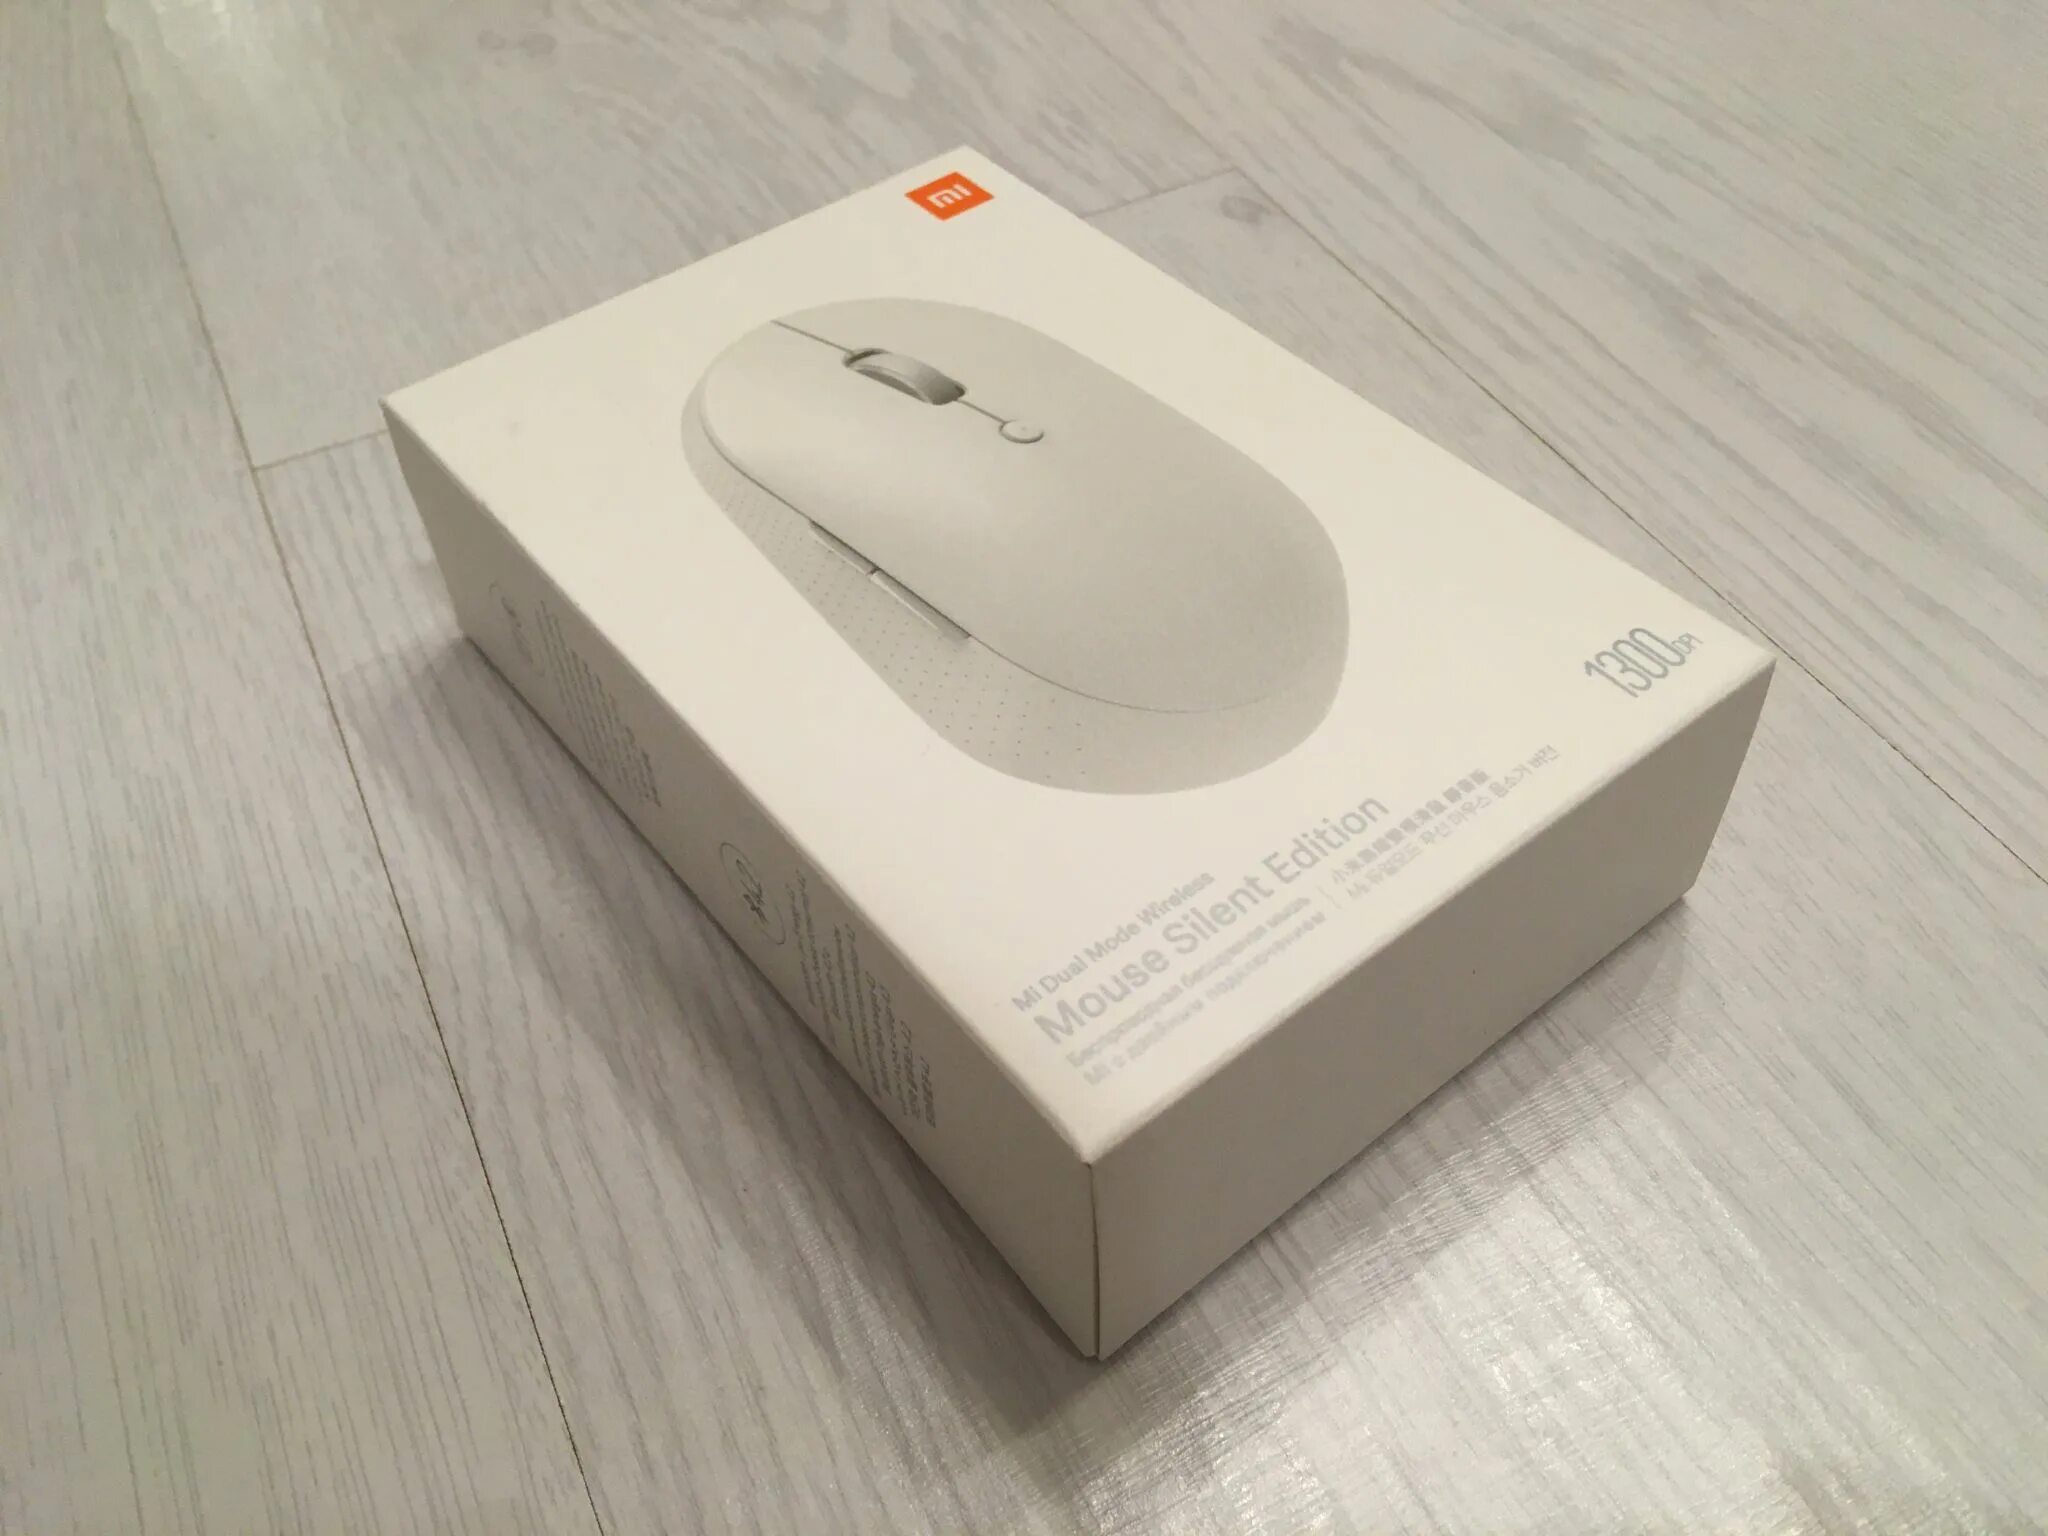 Беспроводная мышь xiaomi silent edition. Xiaomi mi Dual Mode Wireless Mouse Silent Edition (White) hlk4040gl. Mi Dual Mode Wireless Mouse Silent Edition (White). Xiaomi mi Dual Mode Wireless Mouse Silent Edition White. Xiaomi mi Dual Mode Wireless Mouse Silent Edition.